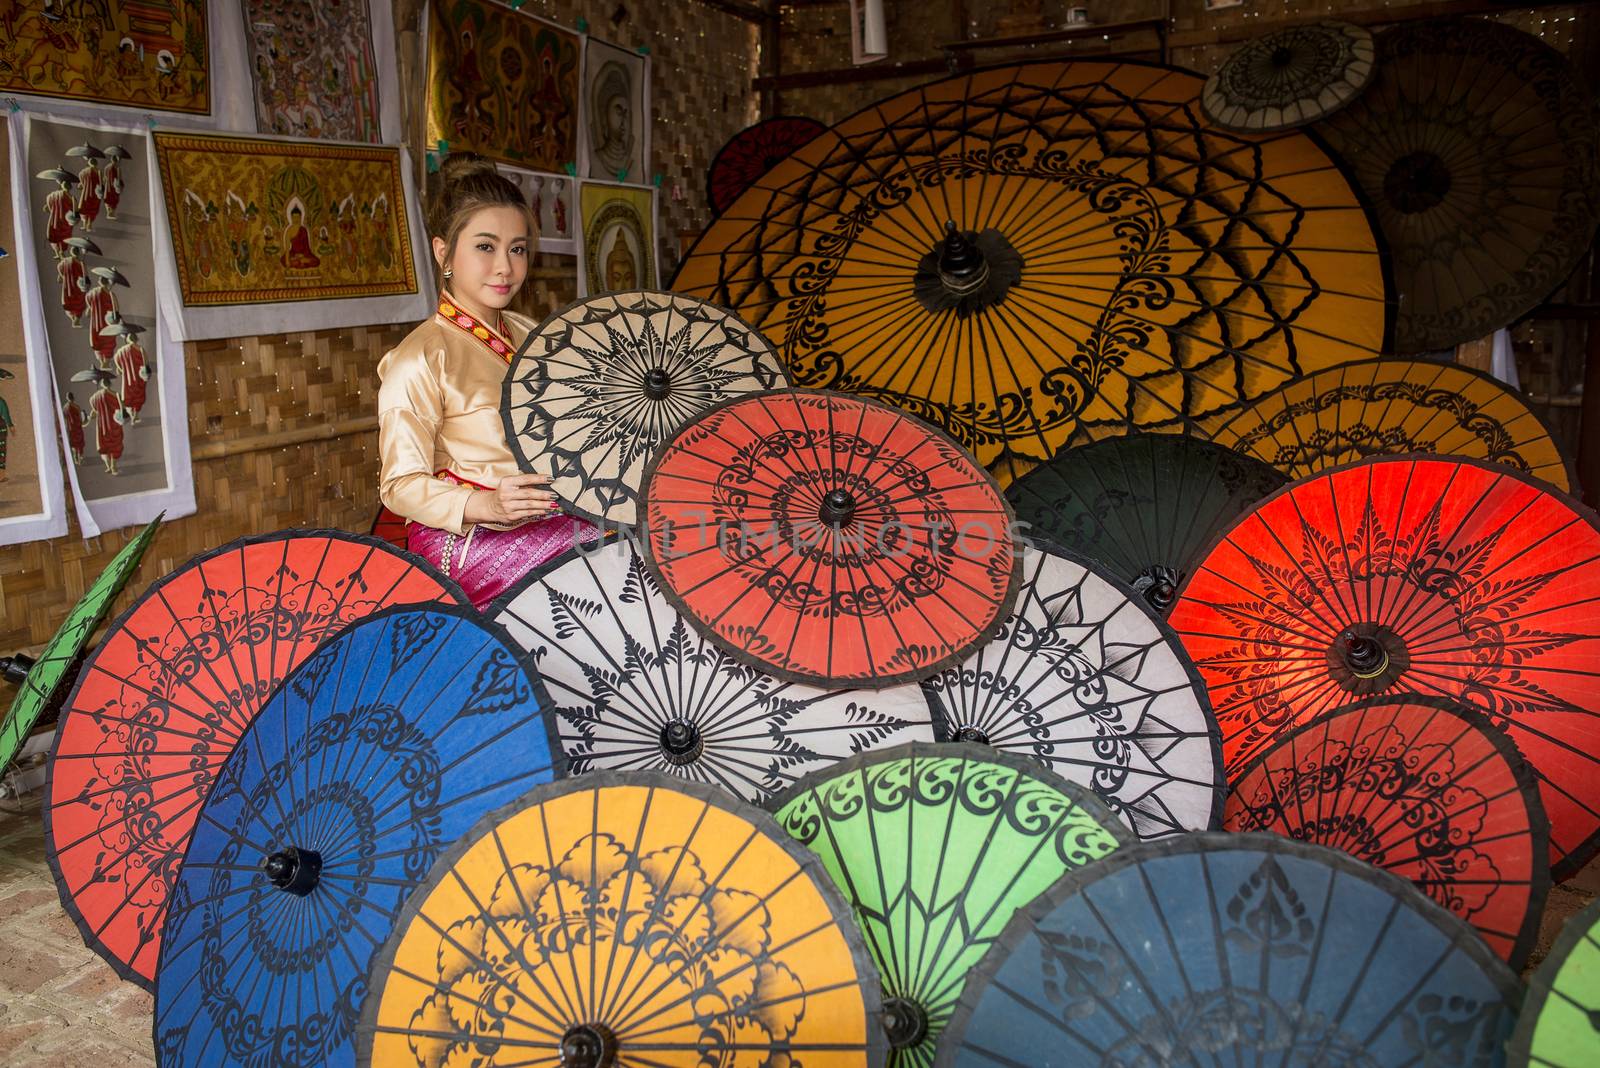 Asian Women in Colorful Umbrella Souvenier Shop at Bagan, Mandalay, Myanmar